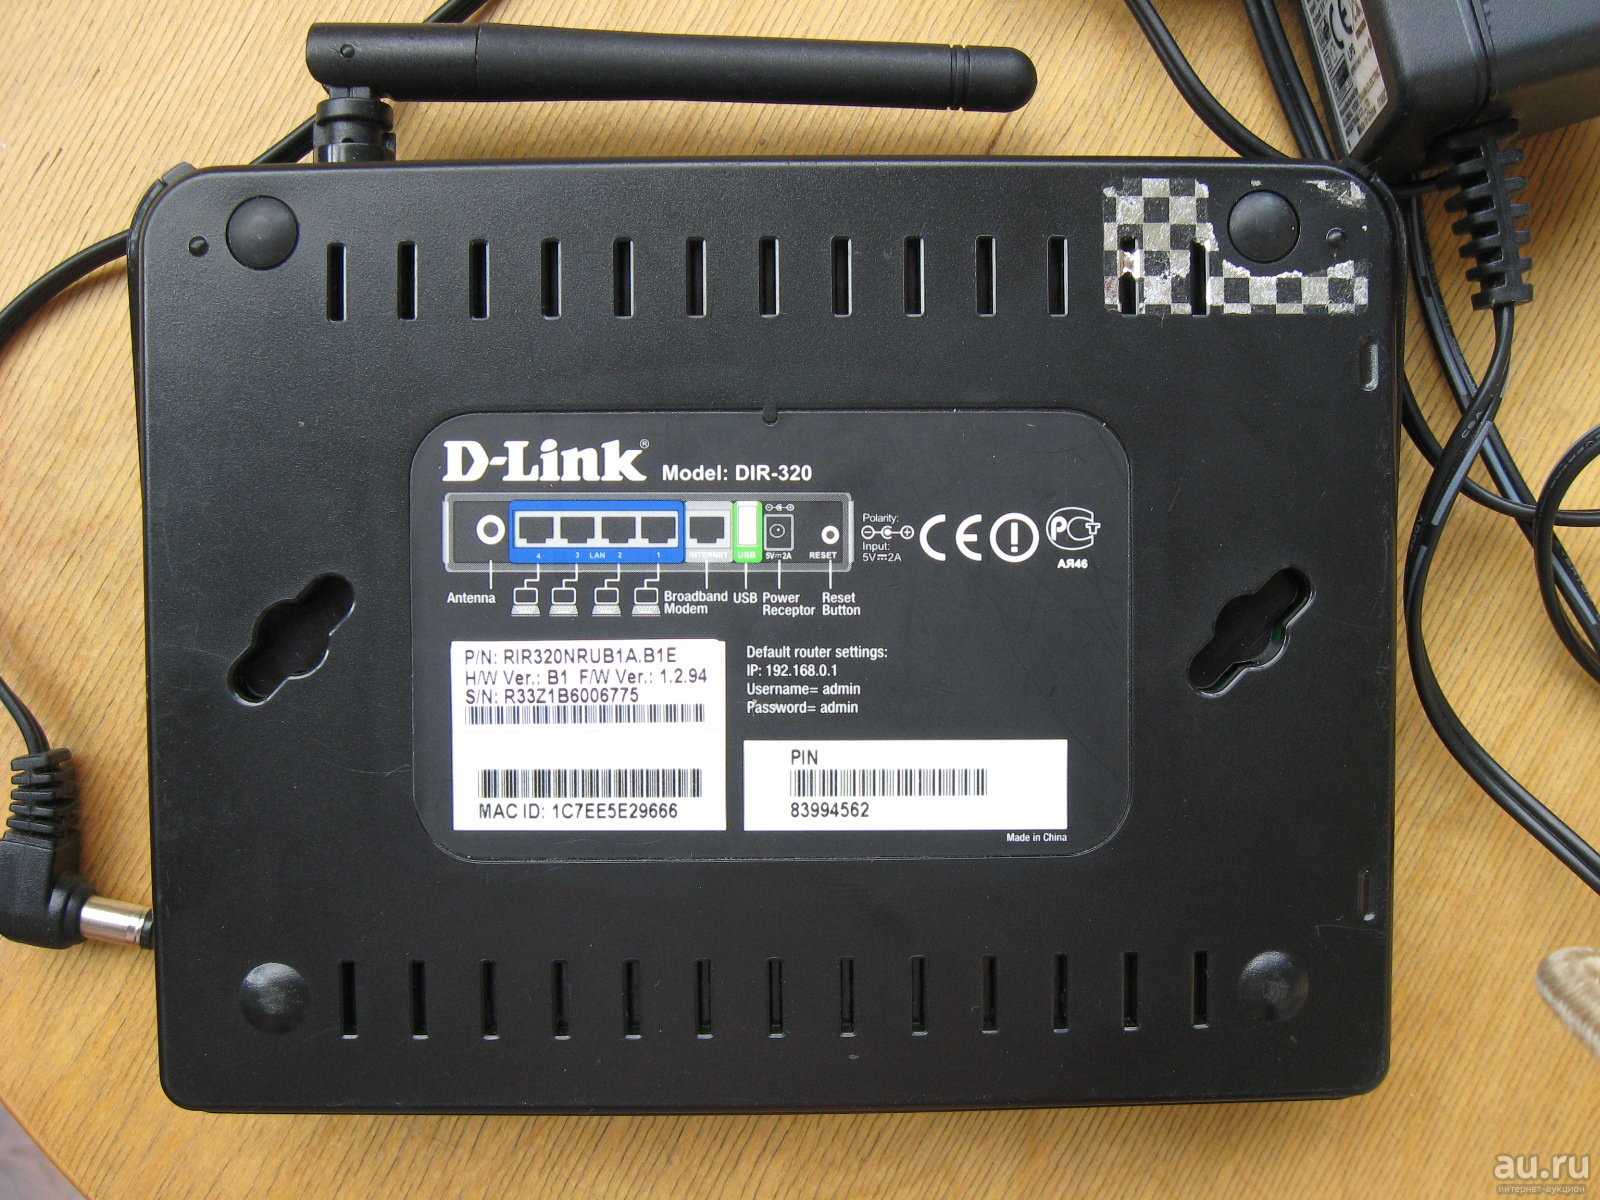 Wi-Fi роутера D-link DIR-320 - подробные характеристики обзоры видео фото Цены в интернет-магазинах где можно купить wi-fi роутеру D-link DIR-320